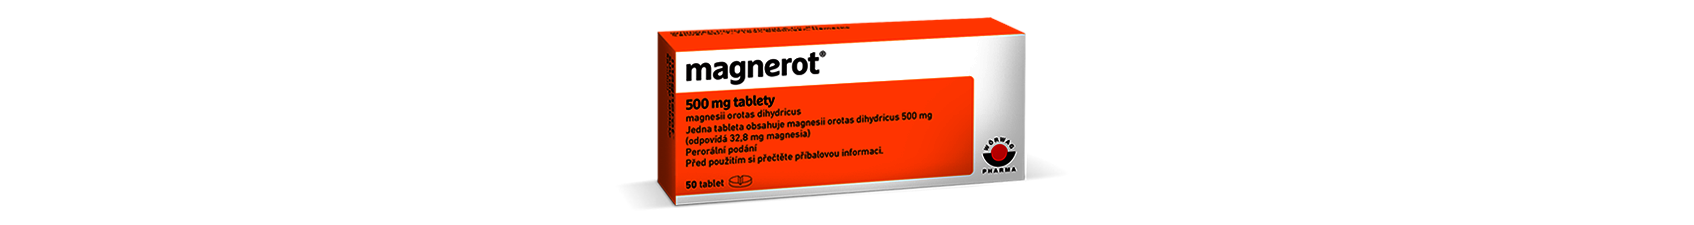 Magnerot - magnezium (horčík) v oranžové krabičce.